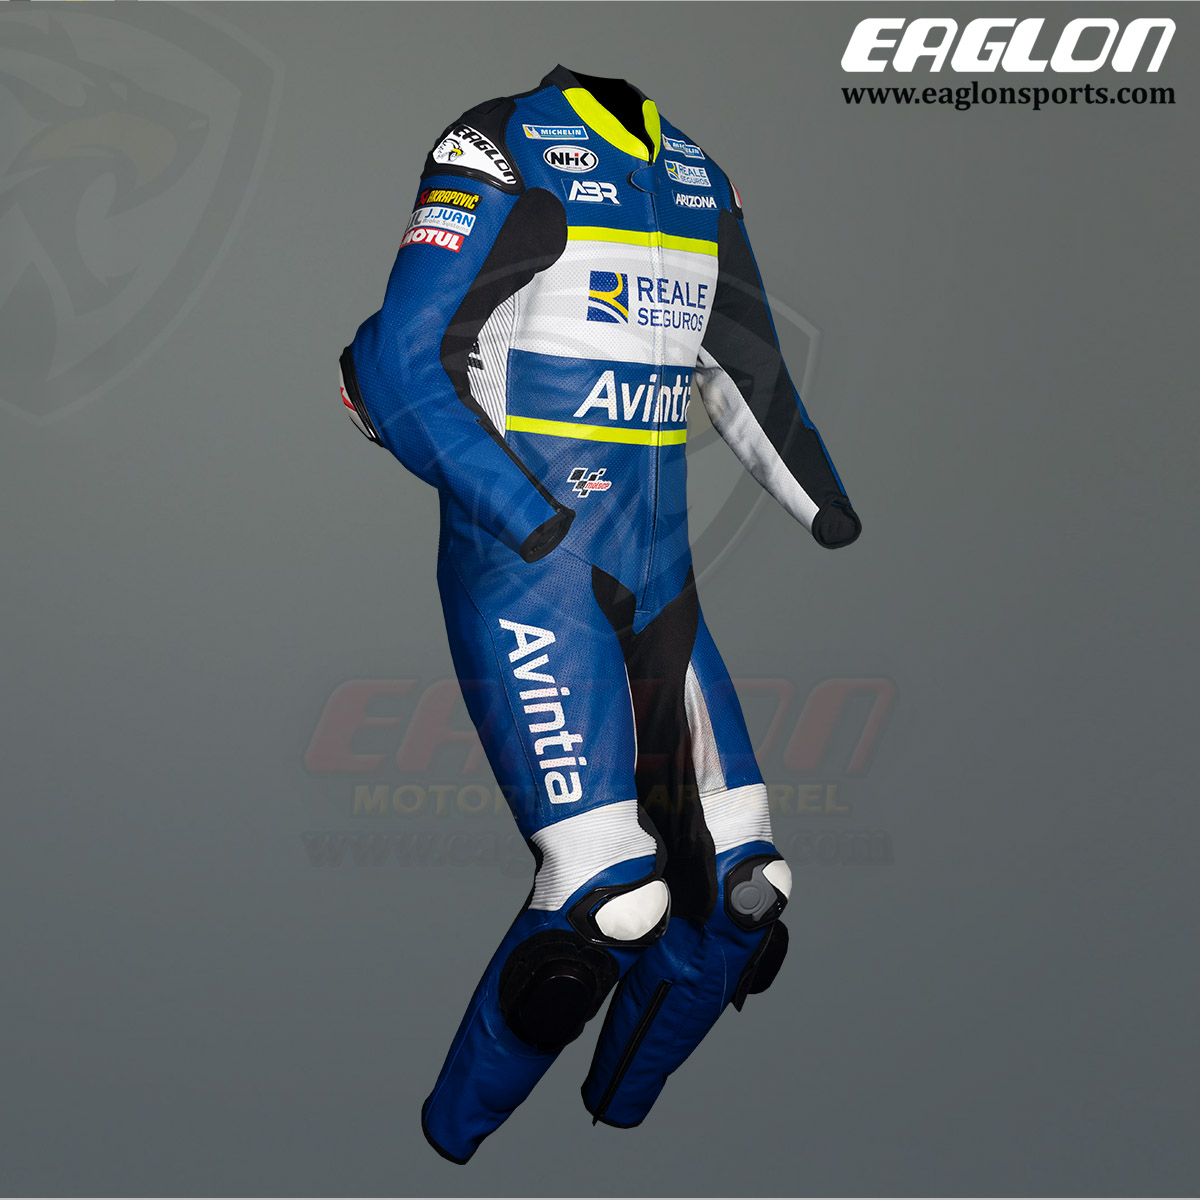 Karel Abraham Avintia MotoGP 2021 Leather Race Suit Front